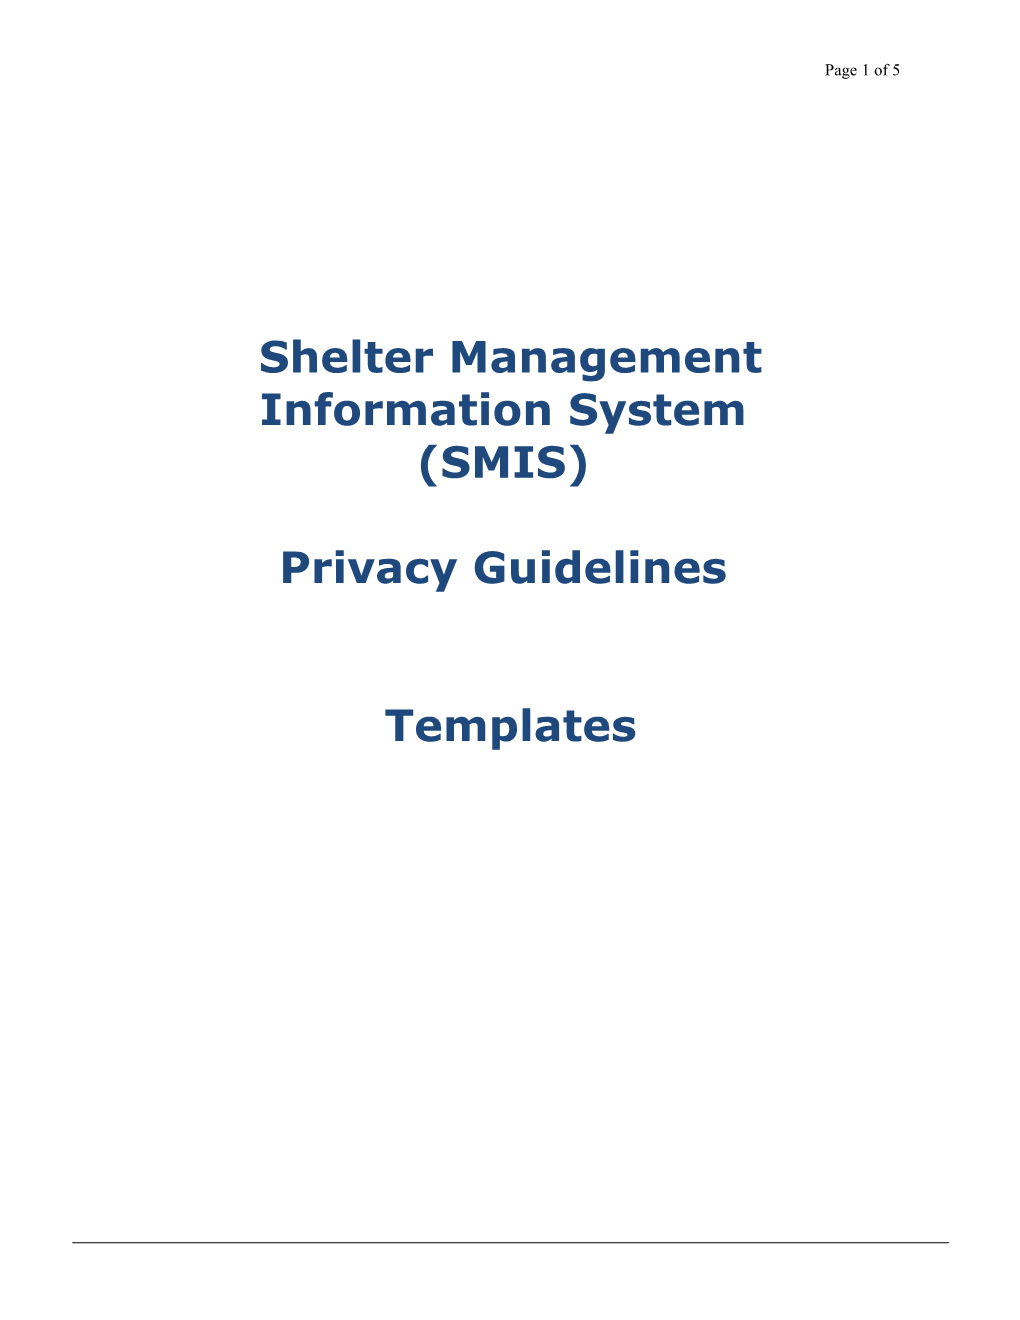 Shelter Management Information System